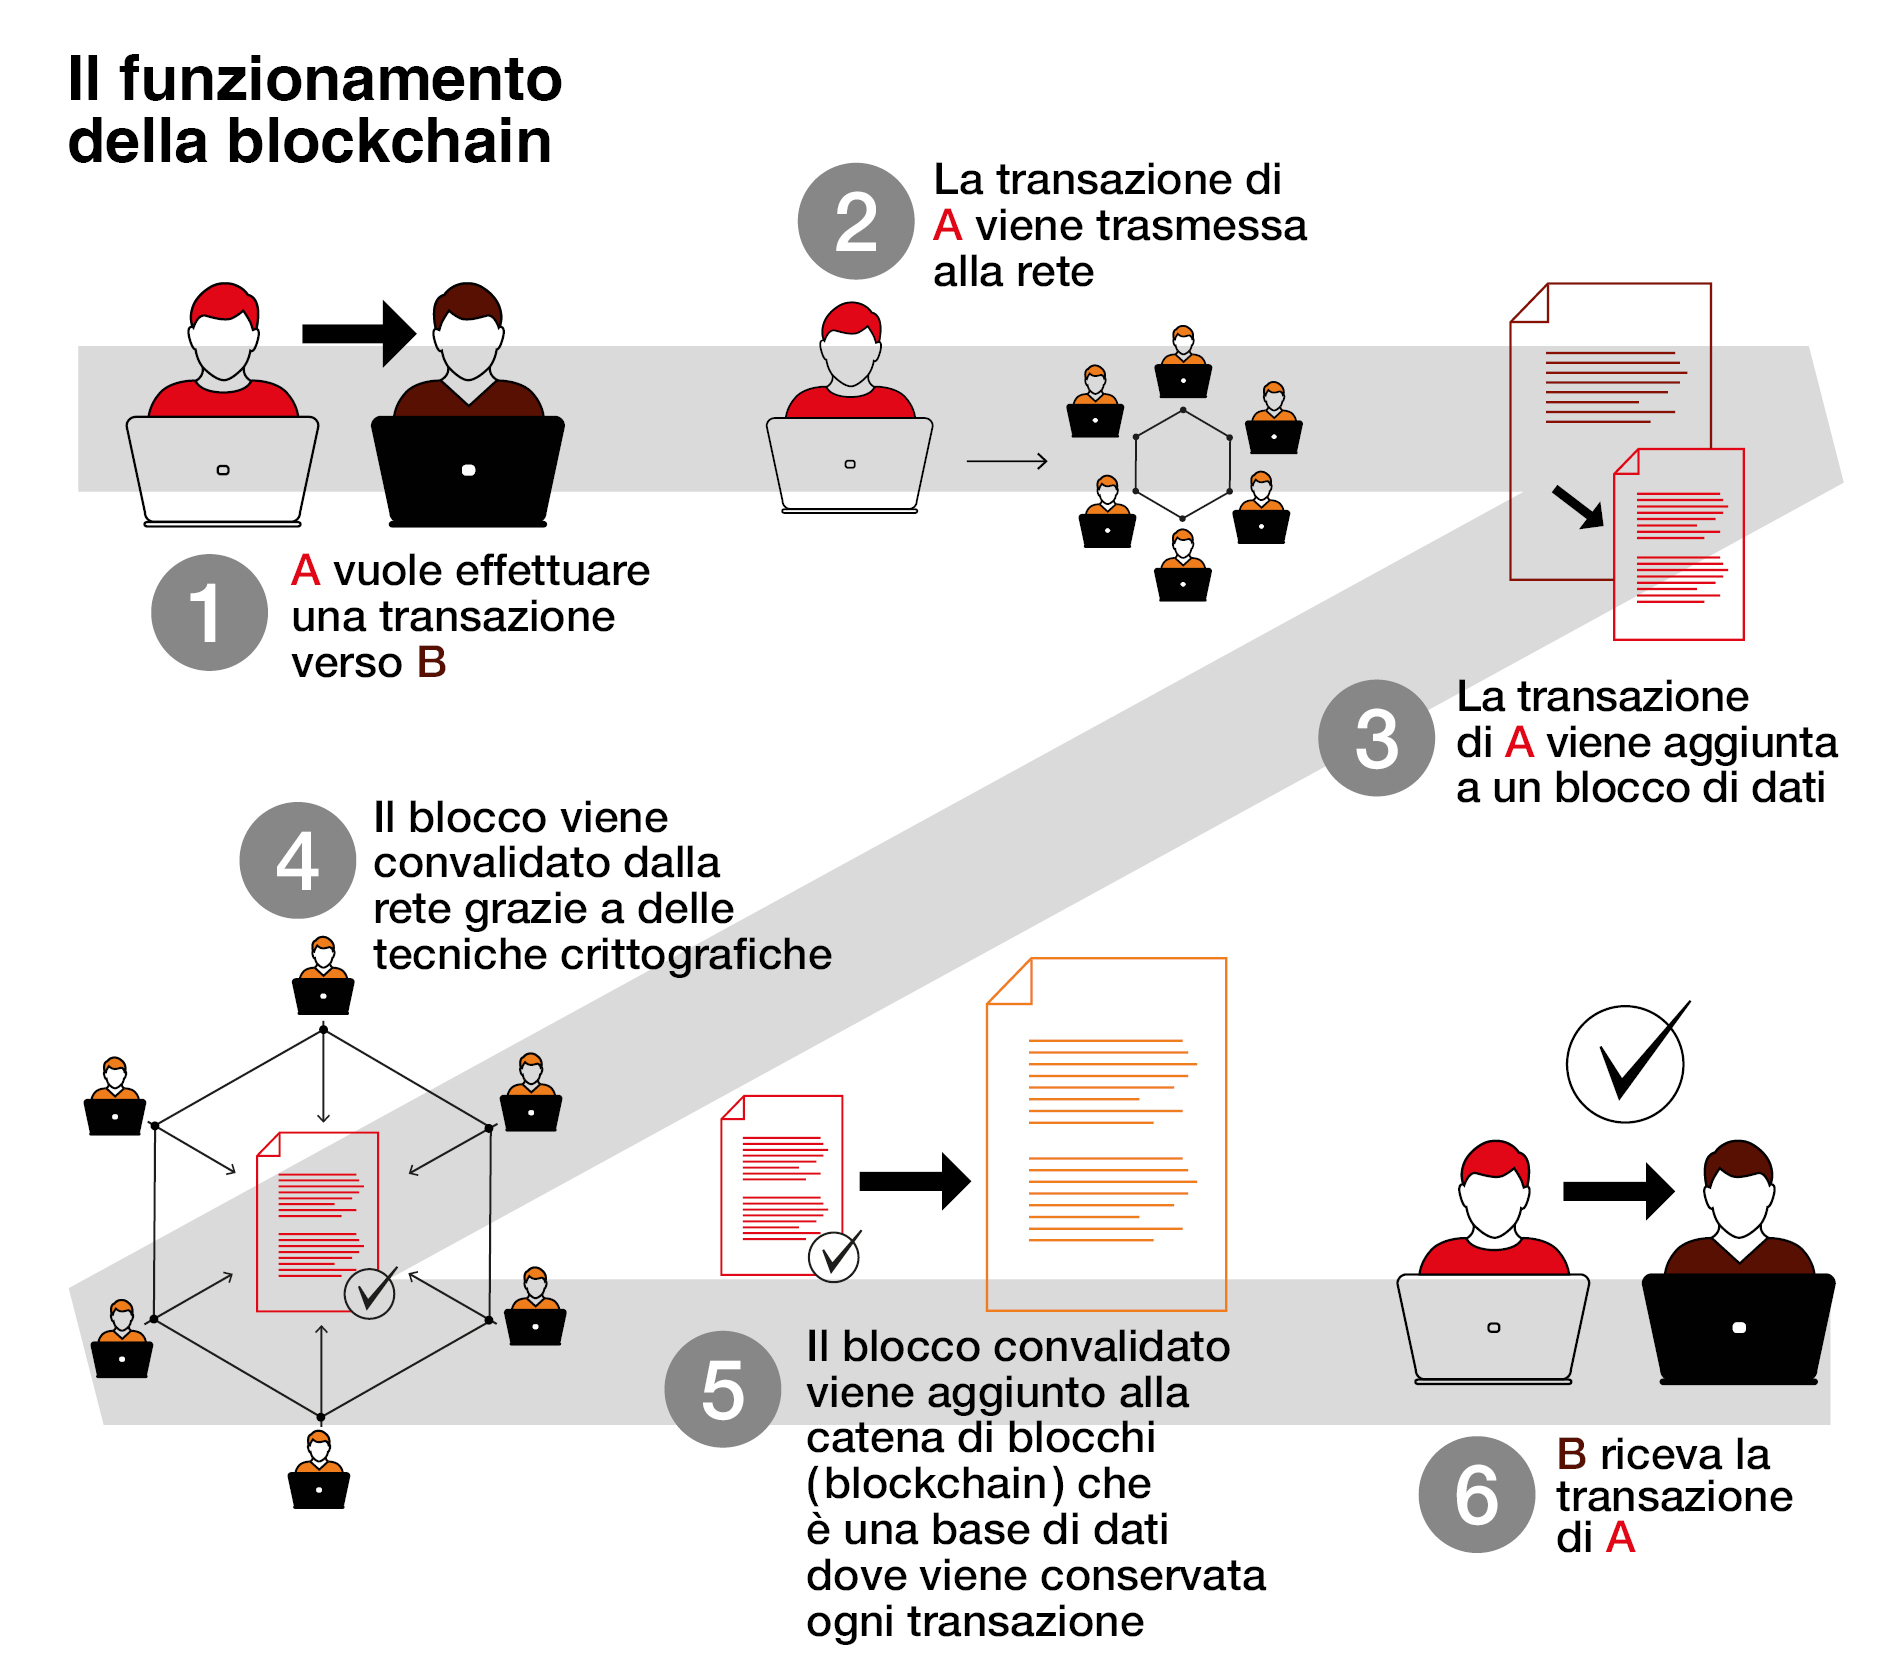 Schema che illustra il funzionamento della blockchain, dall'immissione in rete del pagamento da parte della persona A che viene aggiunto a un blocco di dati, convalidato mediante crittografia, conservato nella blockchain e trasmesso alla persona B.